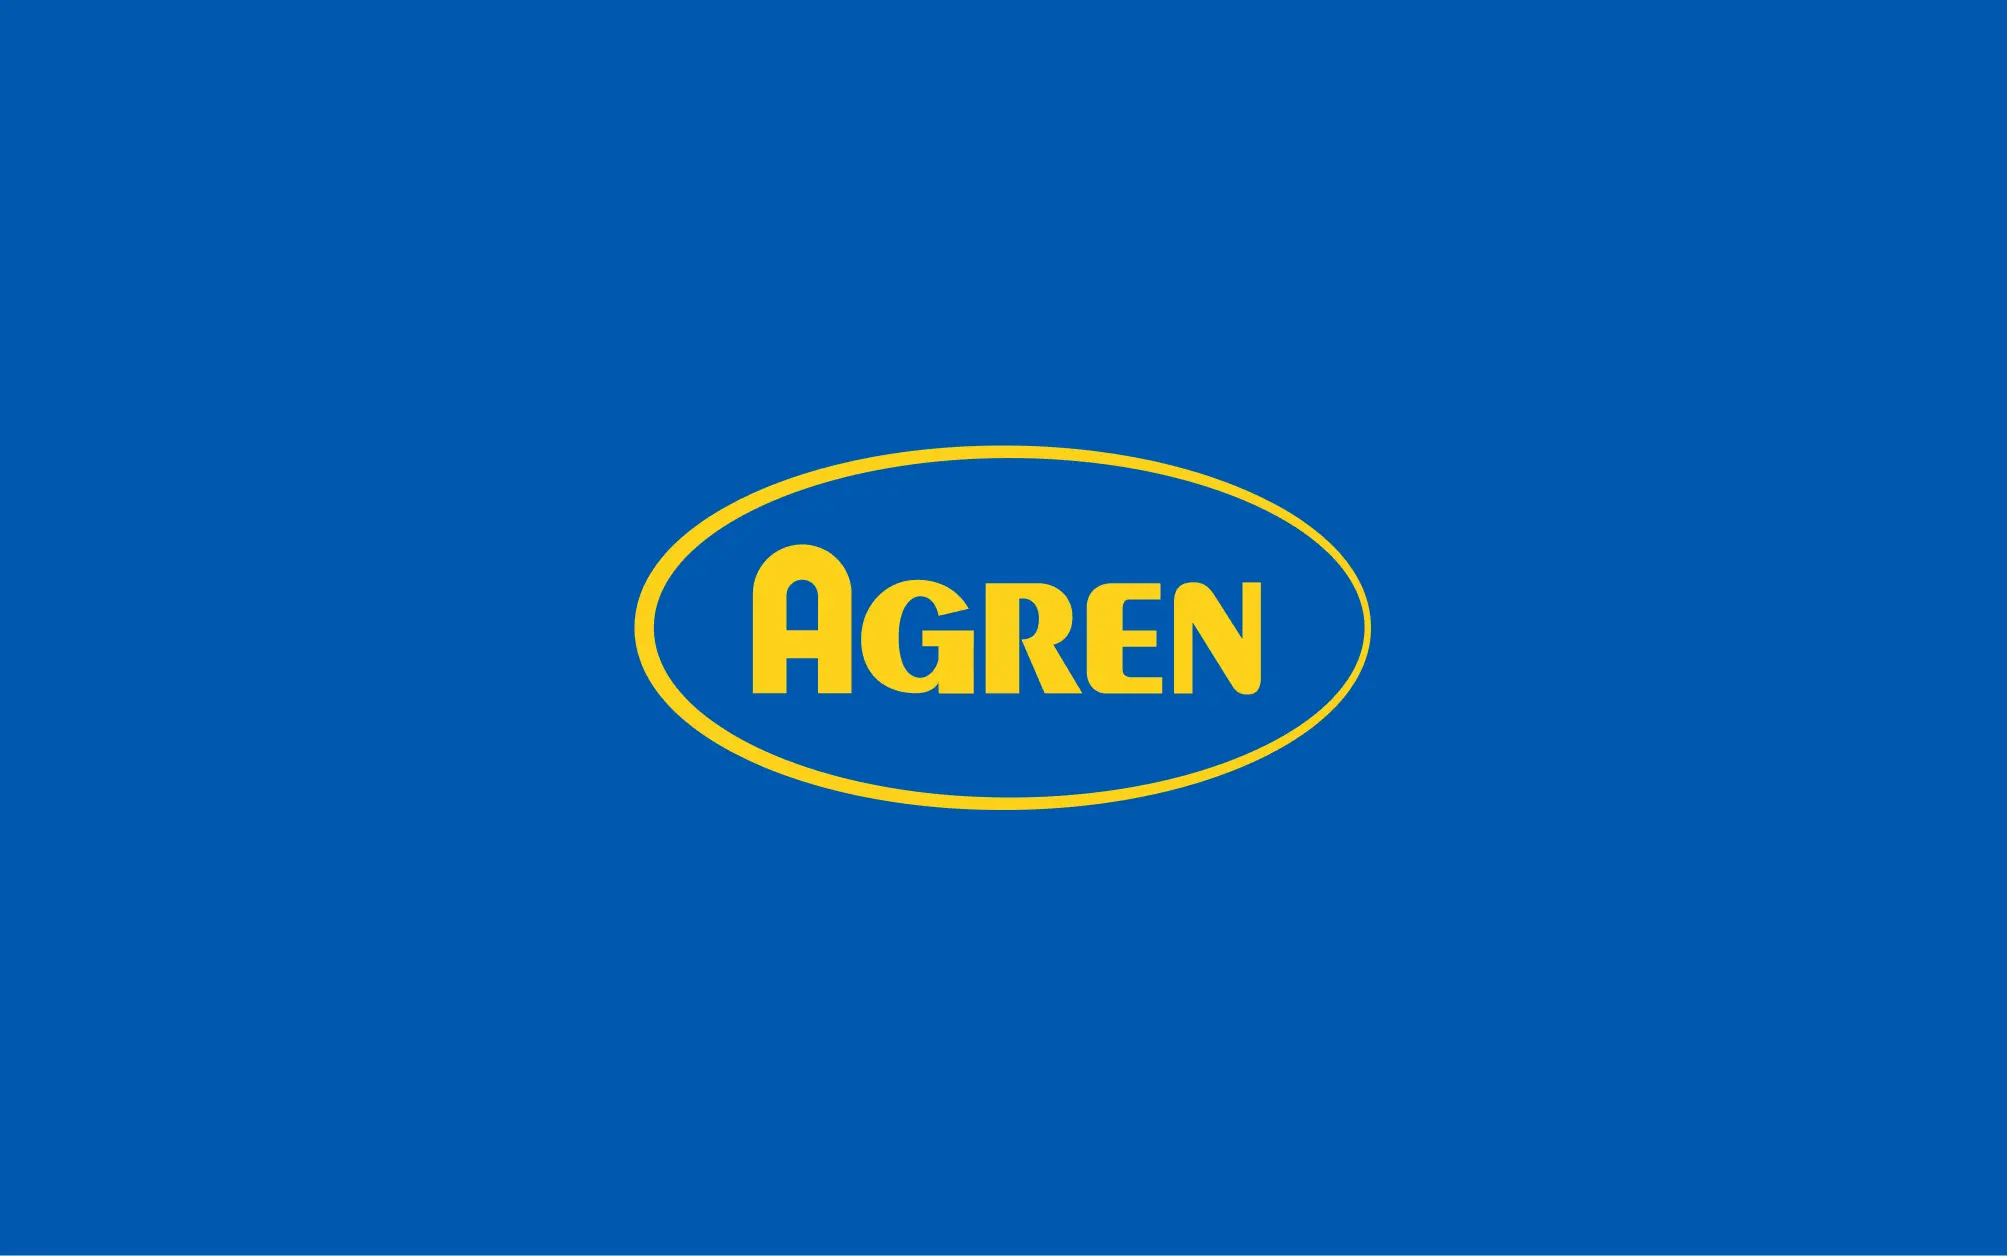 Agren logo on solid blue background